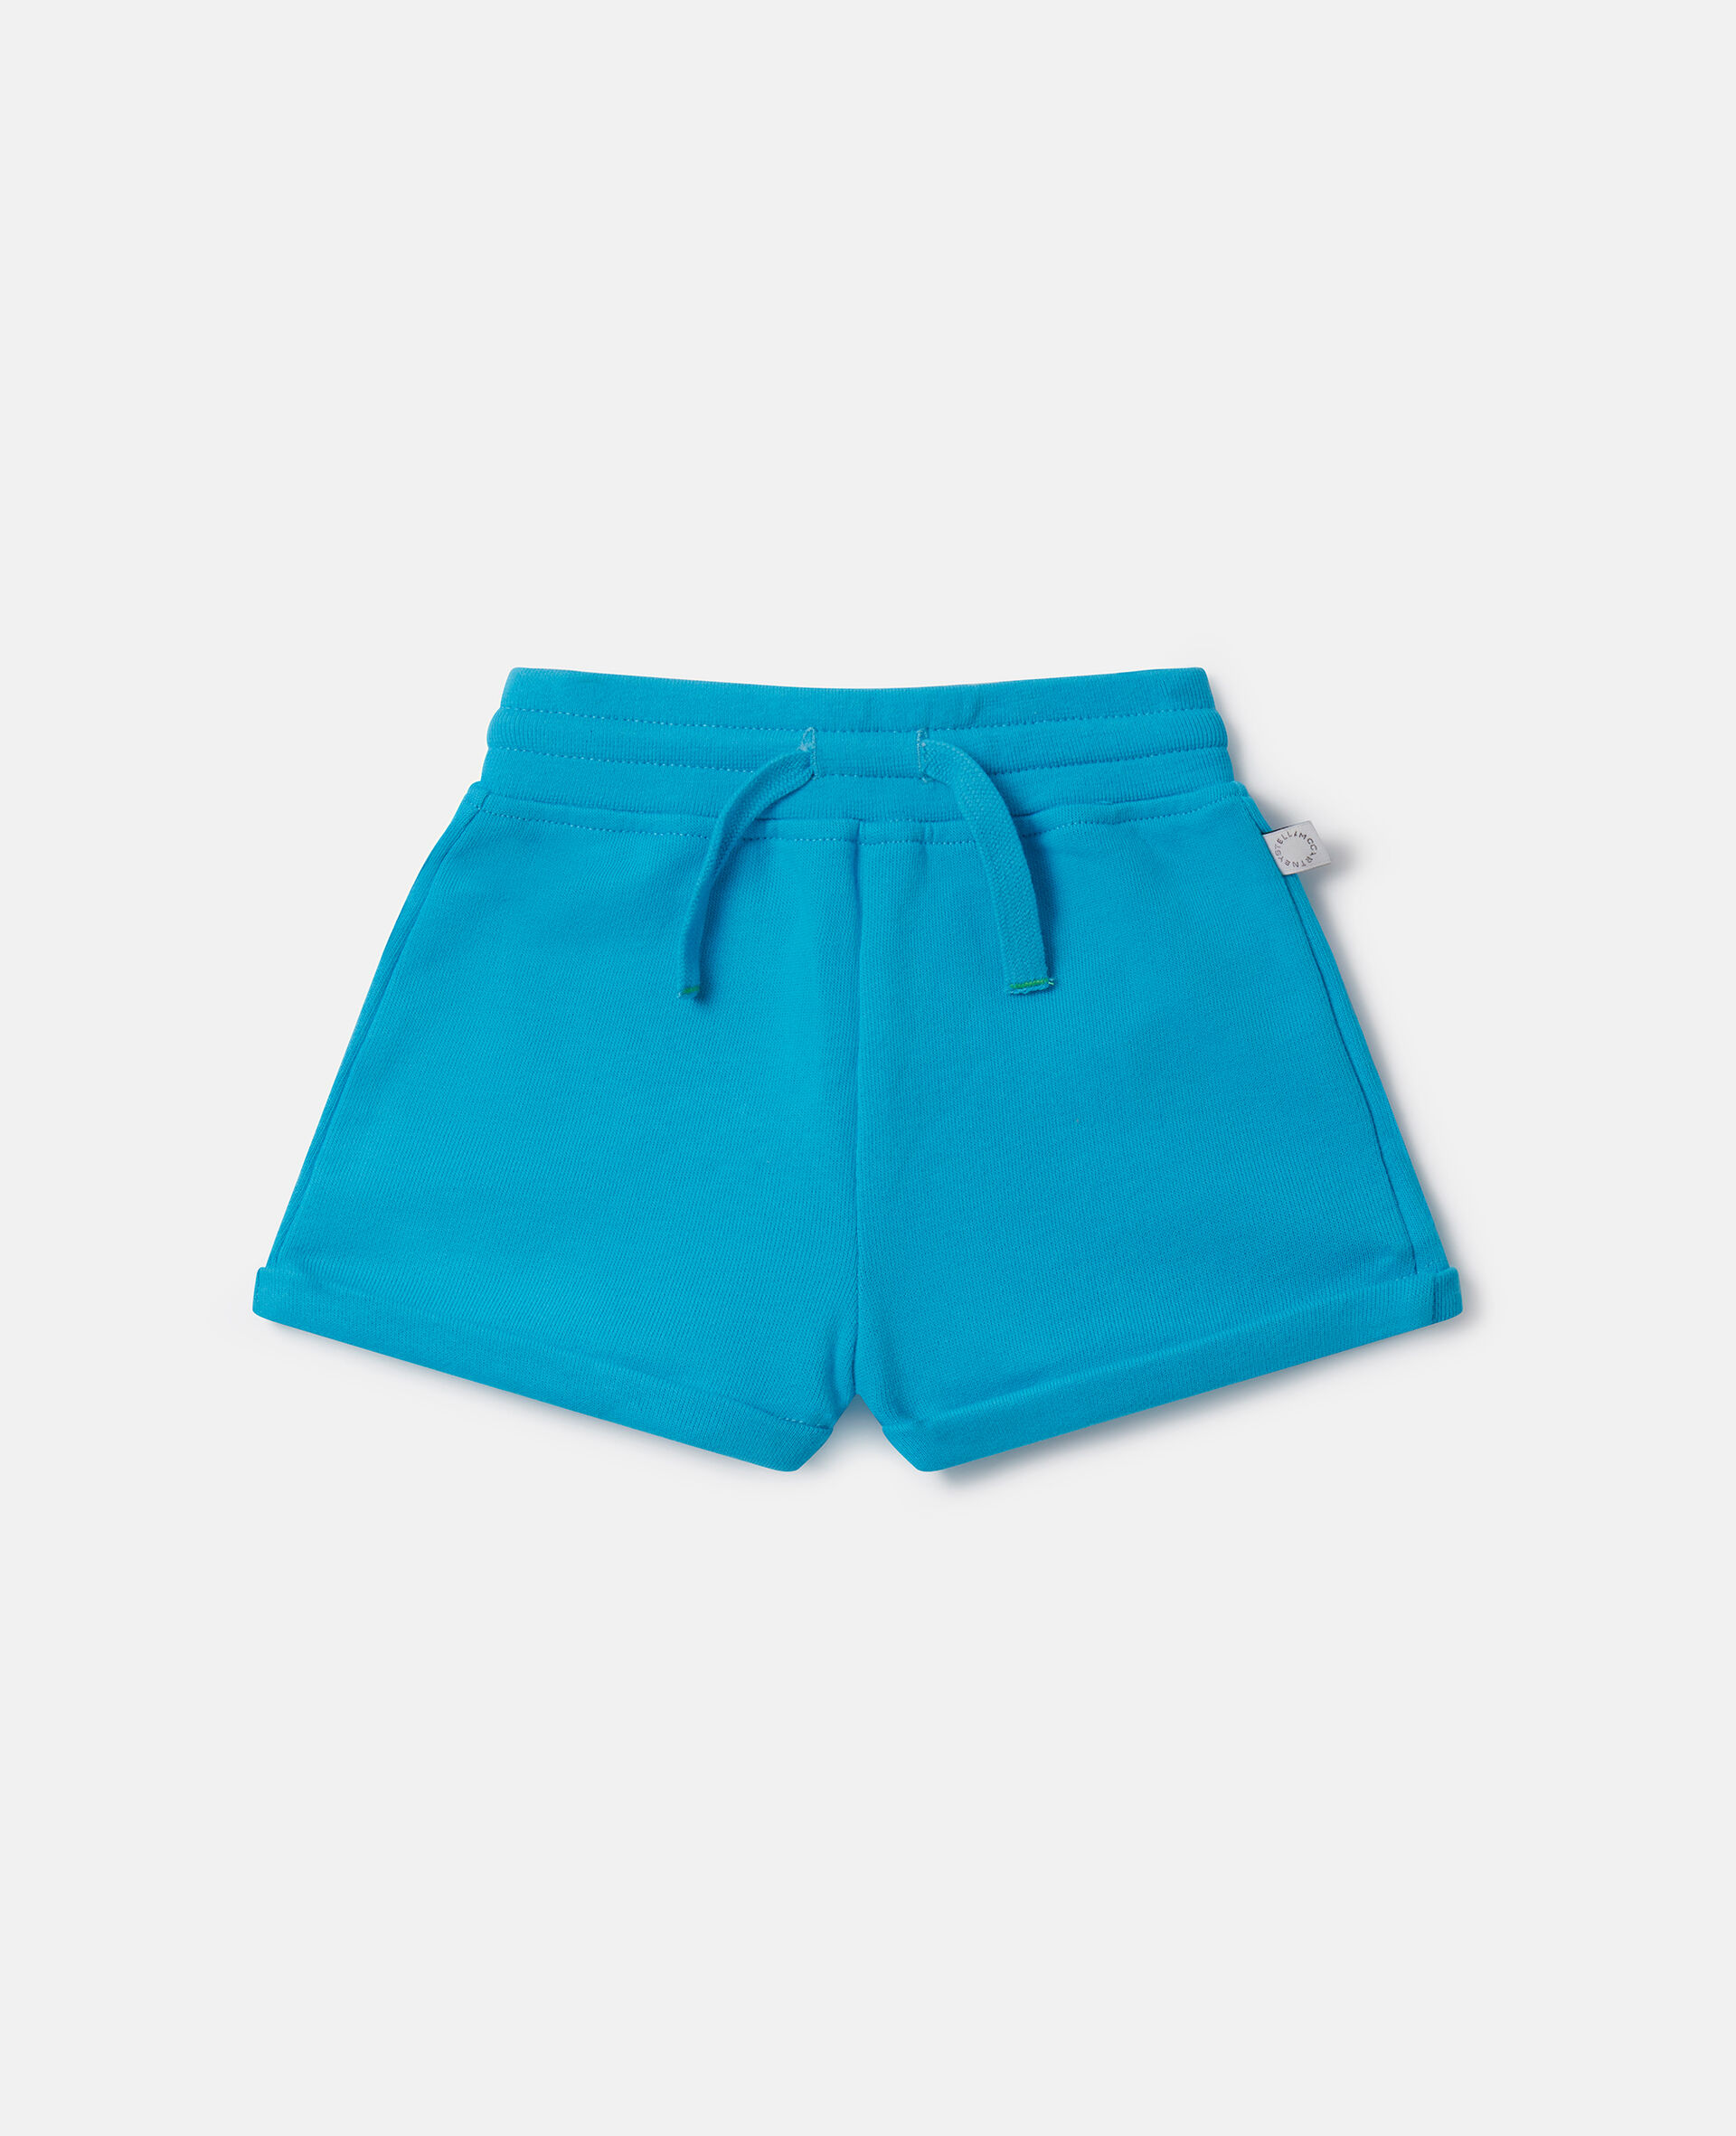 Drawstring Shorts-블루-large image number 0